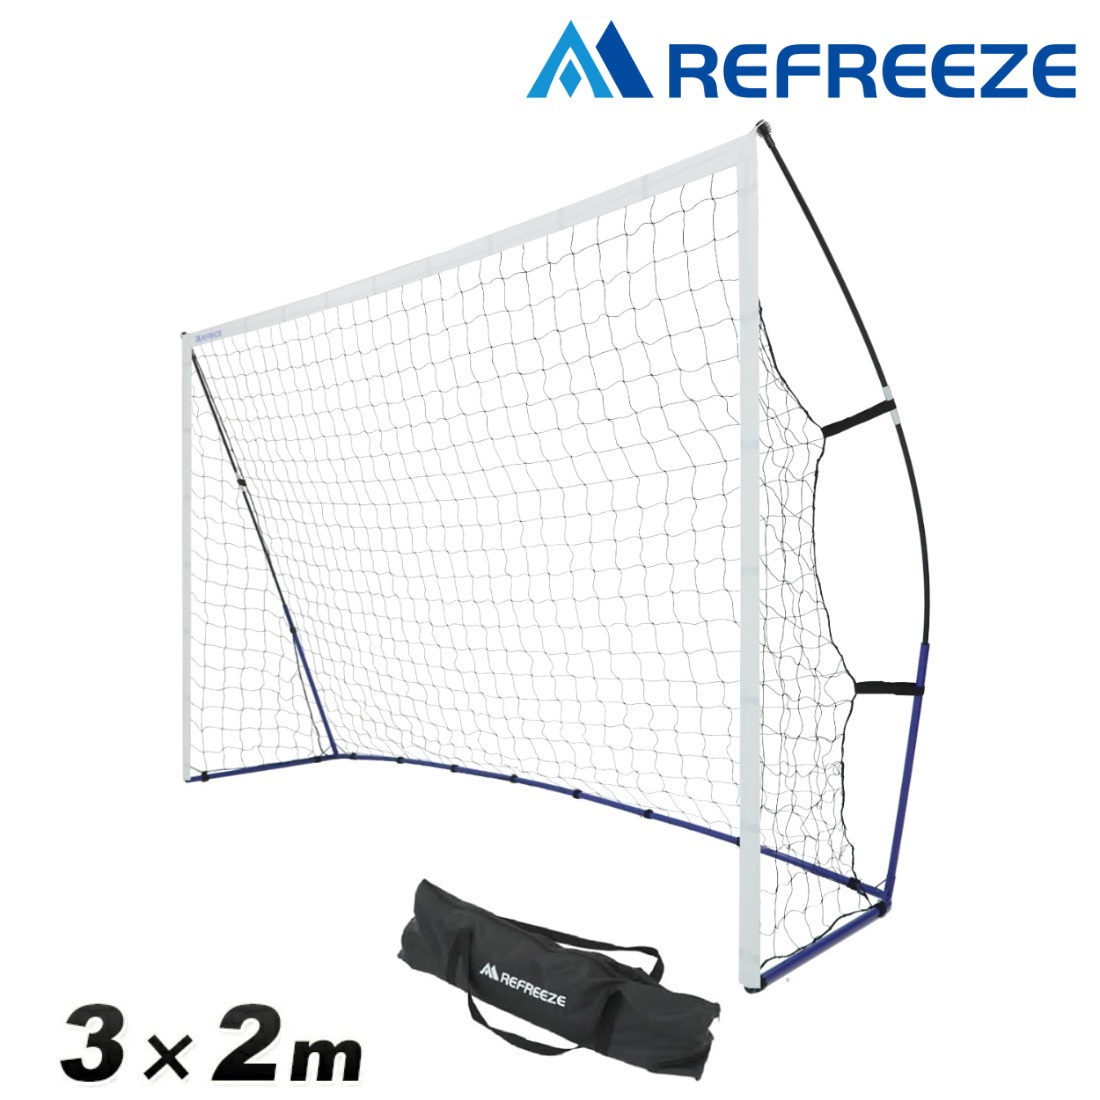 REFREEZE(リフリーズ) ポータブル フットサルゴール 3×2m 収納バッグ付き サッカーゴール ゲーム 対戦 練習 トレーニング